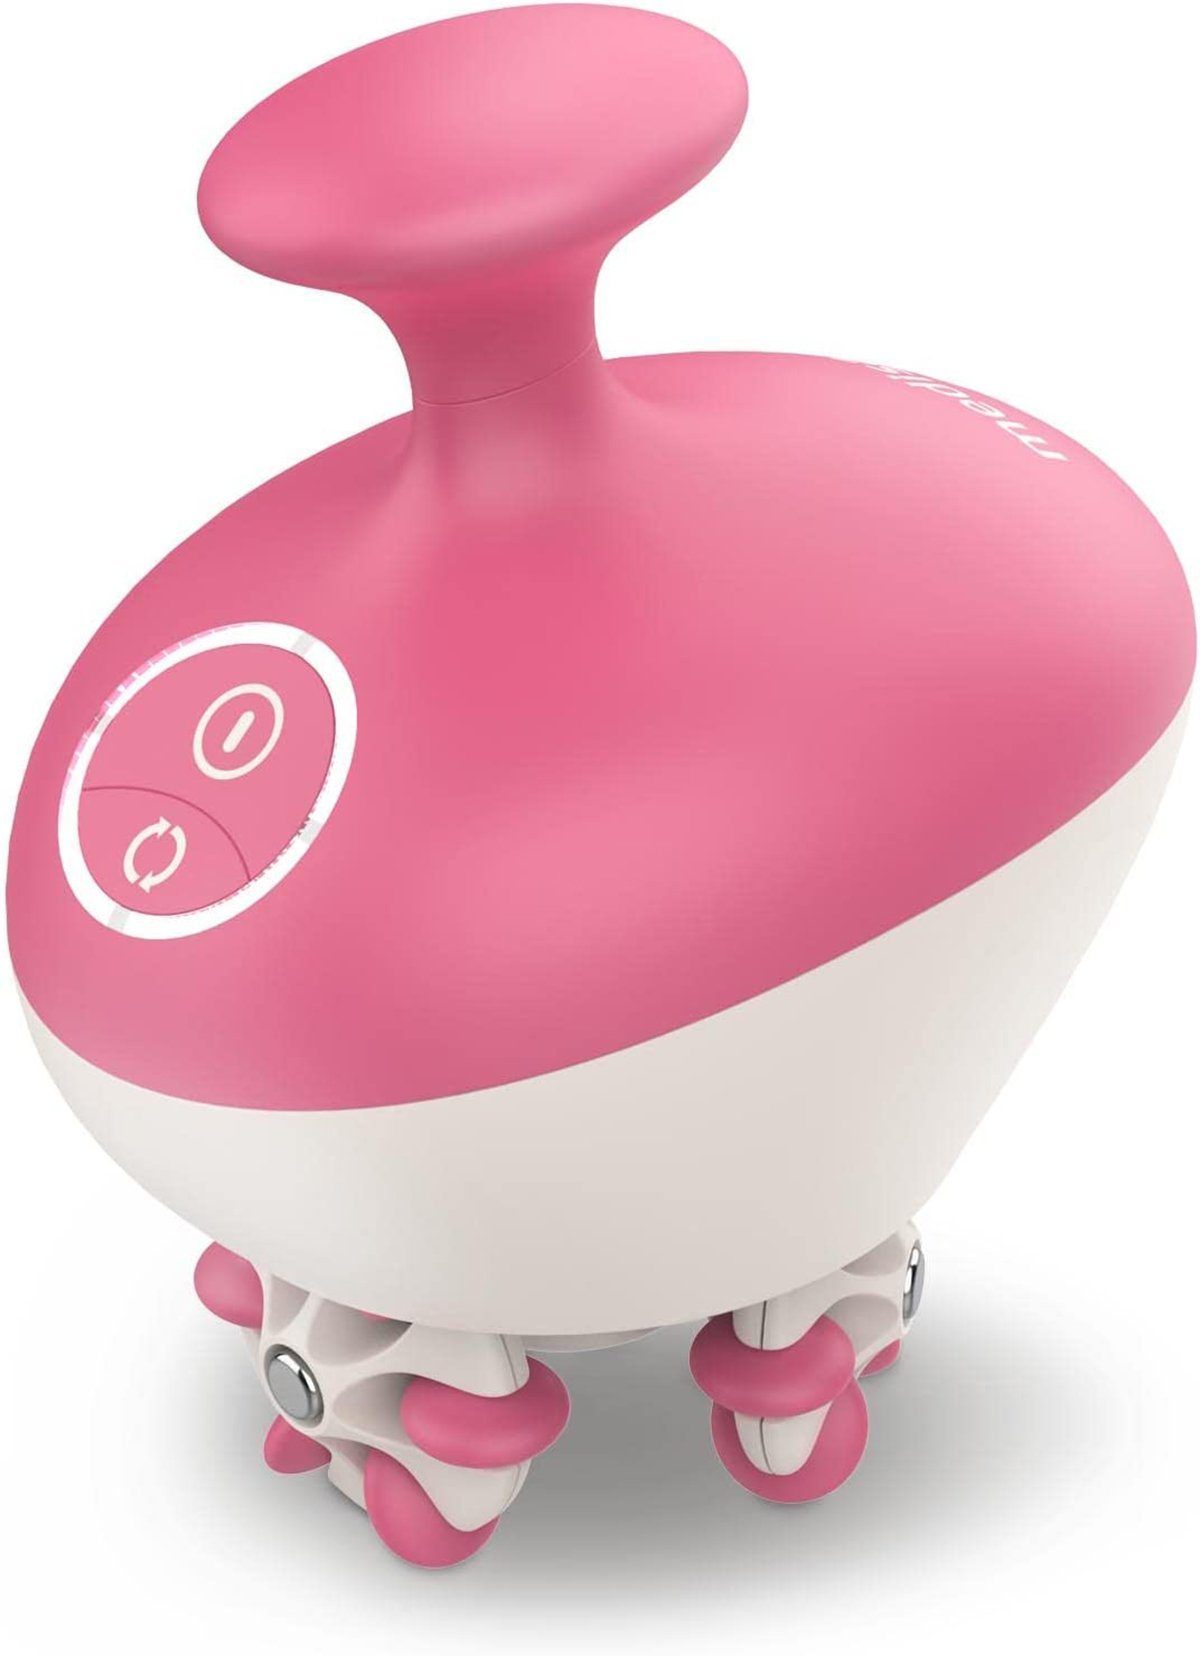 DOTMALL Massagegerät Medisana Cellulite-Massagegerät "AC 900" Pink und Weiß